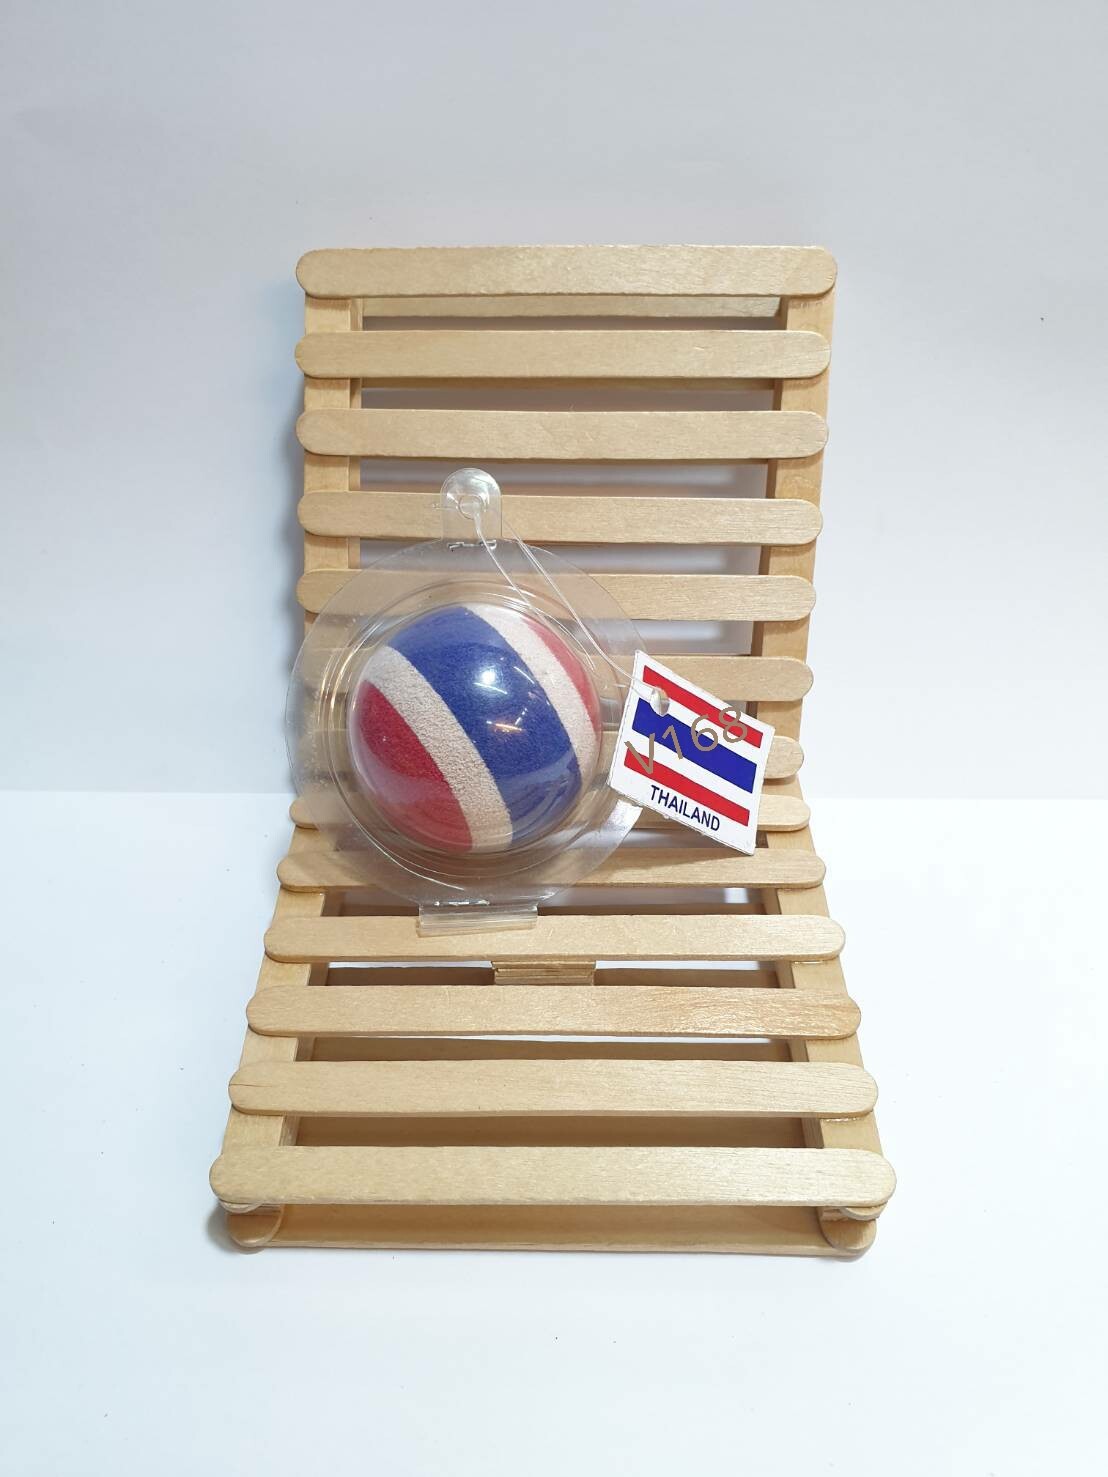 ลูกบอลตุ๊กตาเสียบเสาอากาศรถยนต์ ลายธงชาติไทย